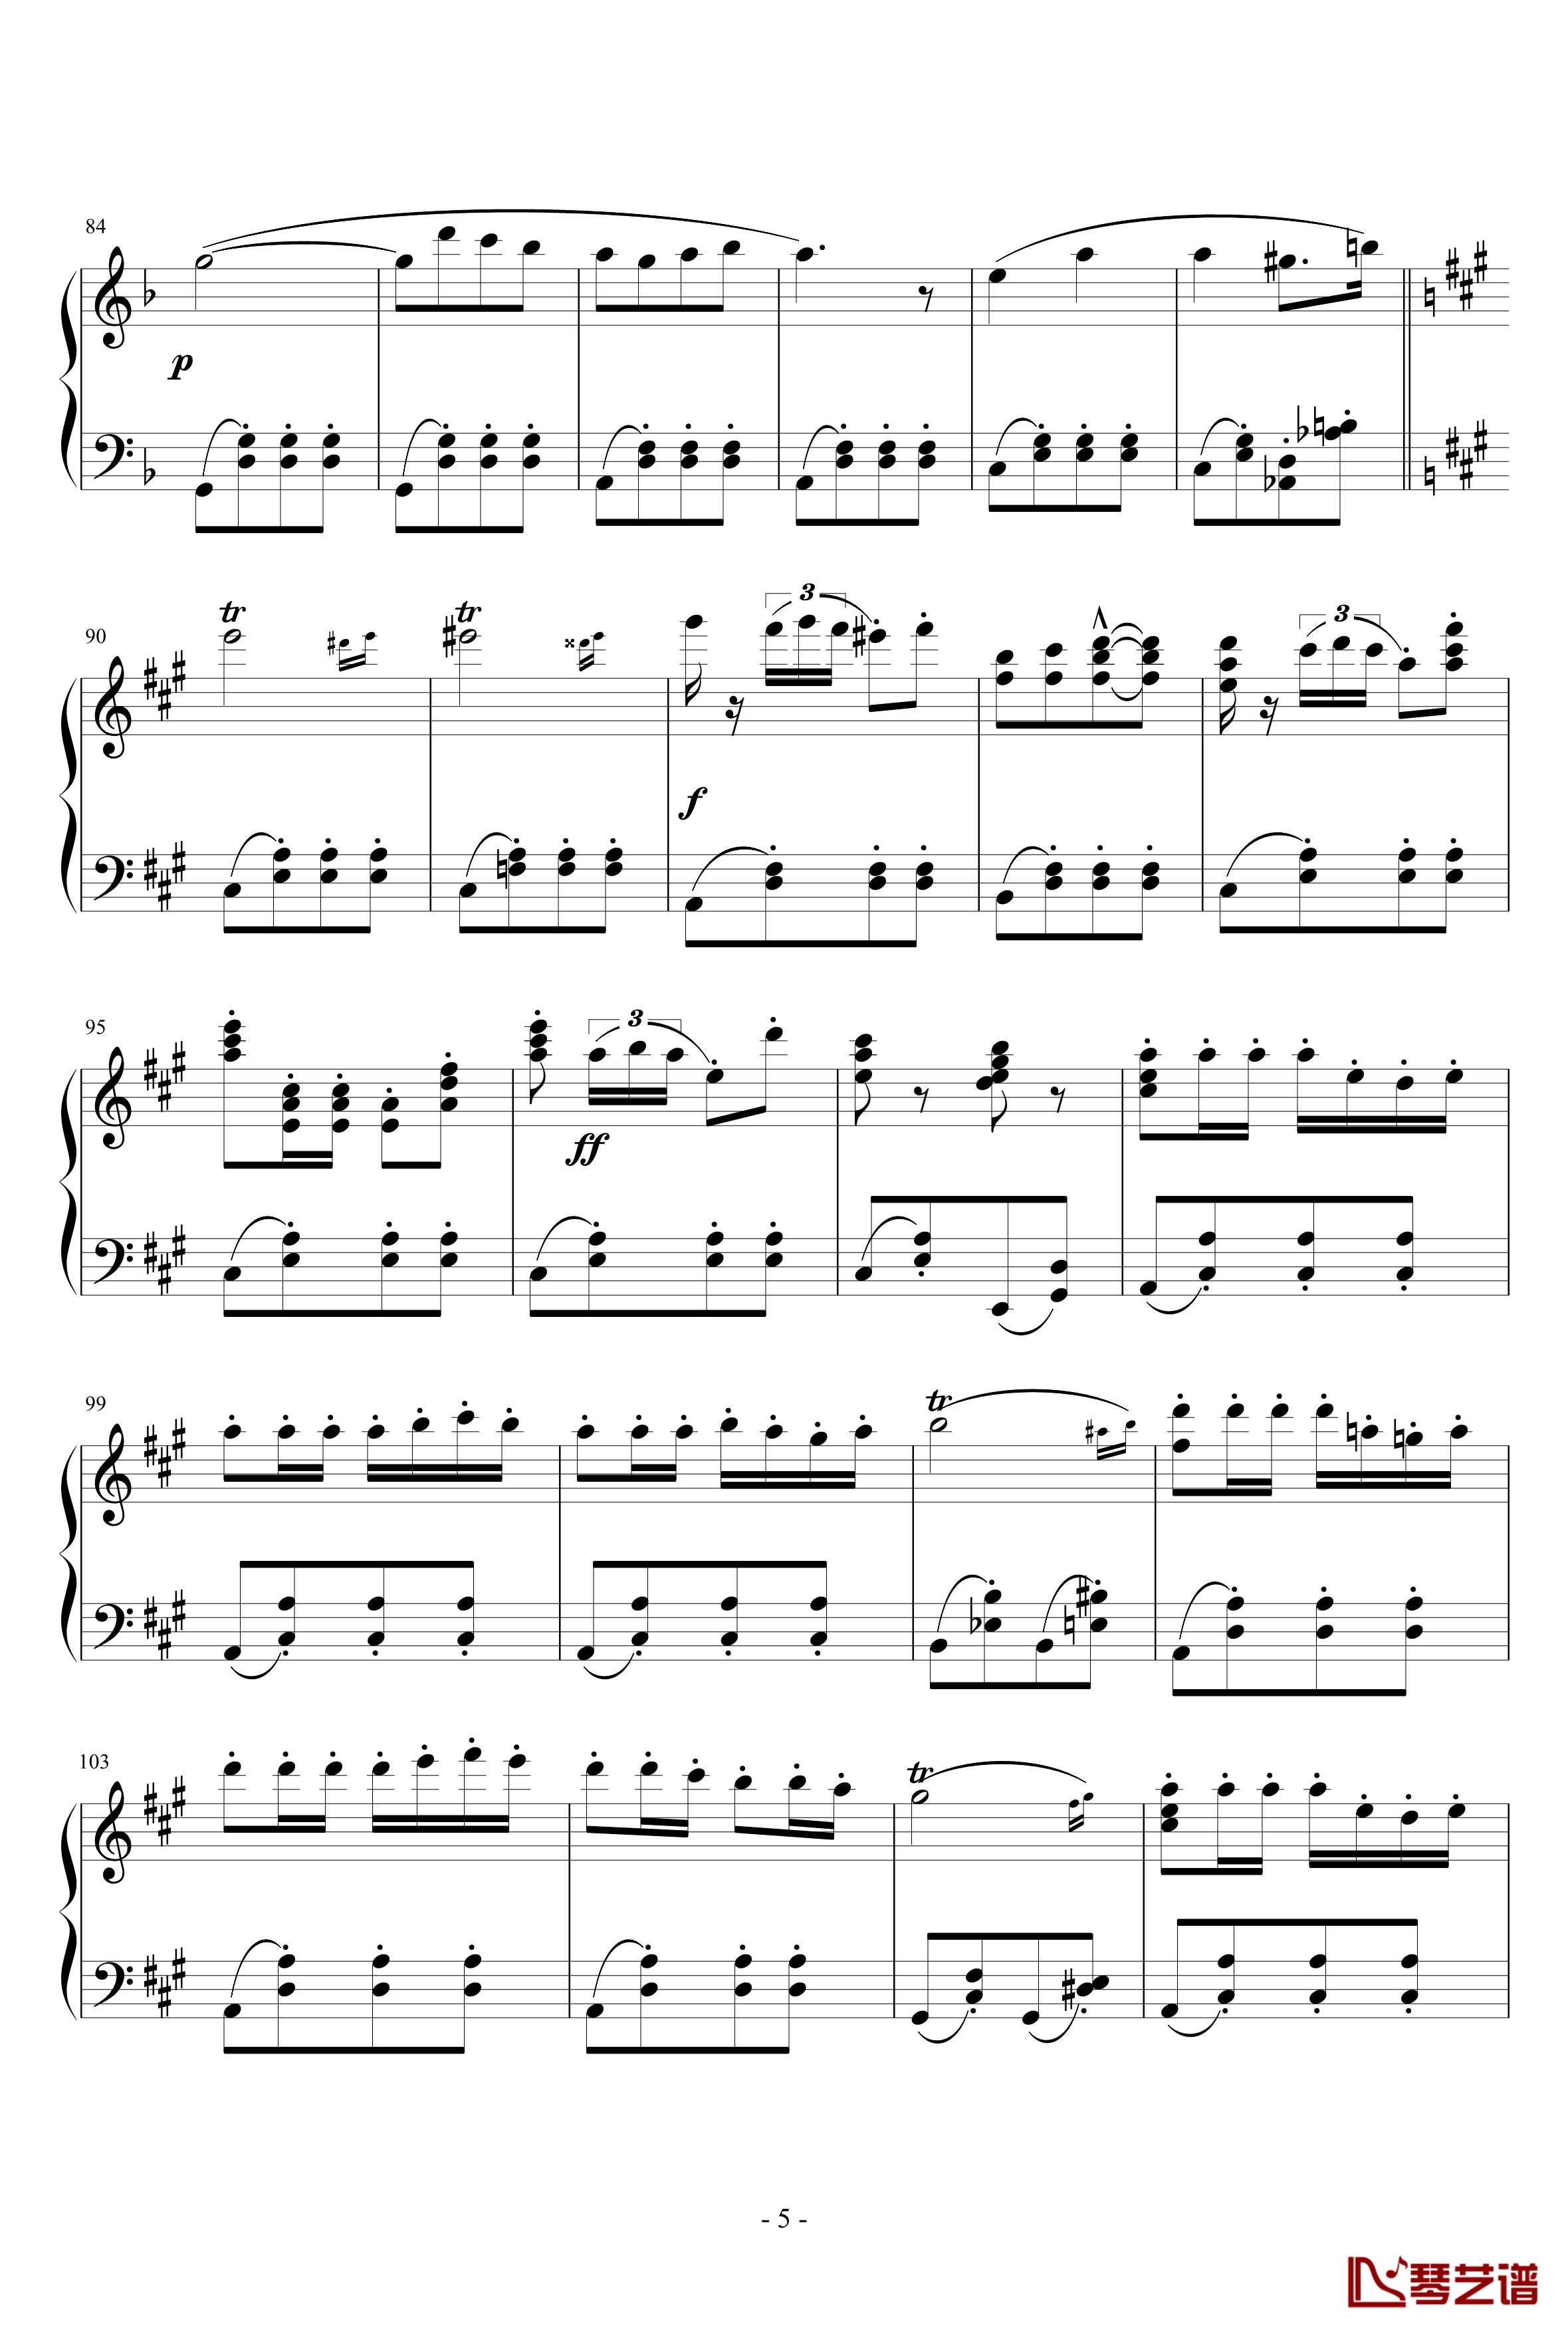 卡门序曲钢琴谱-完整版-比才-Bizet5